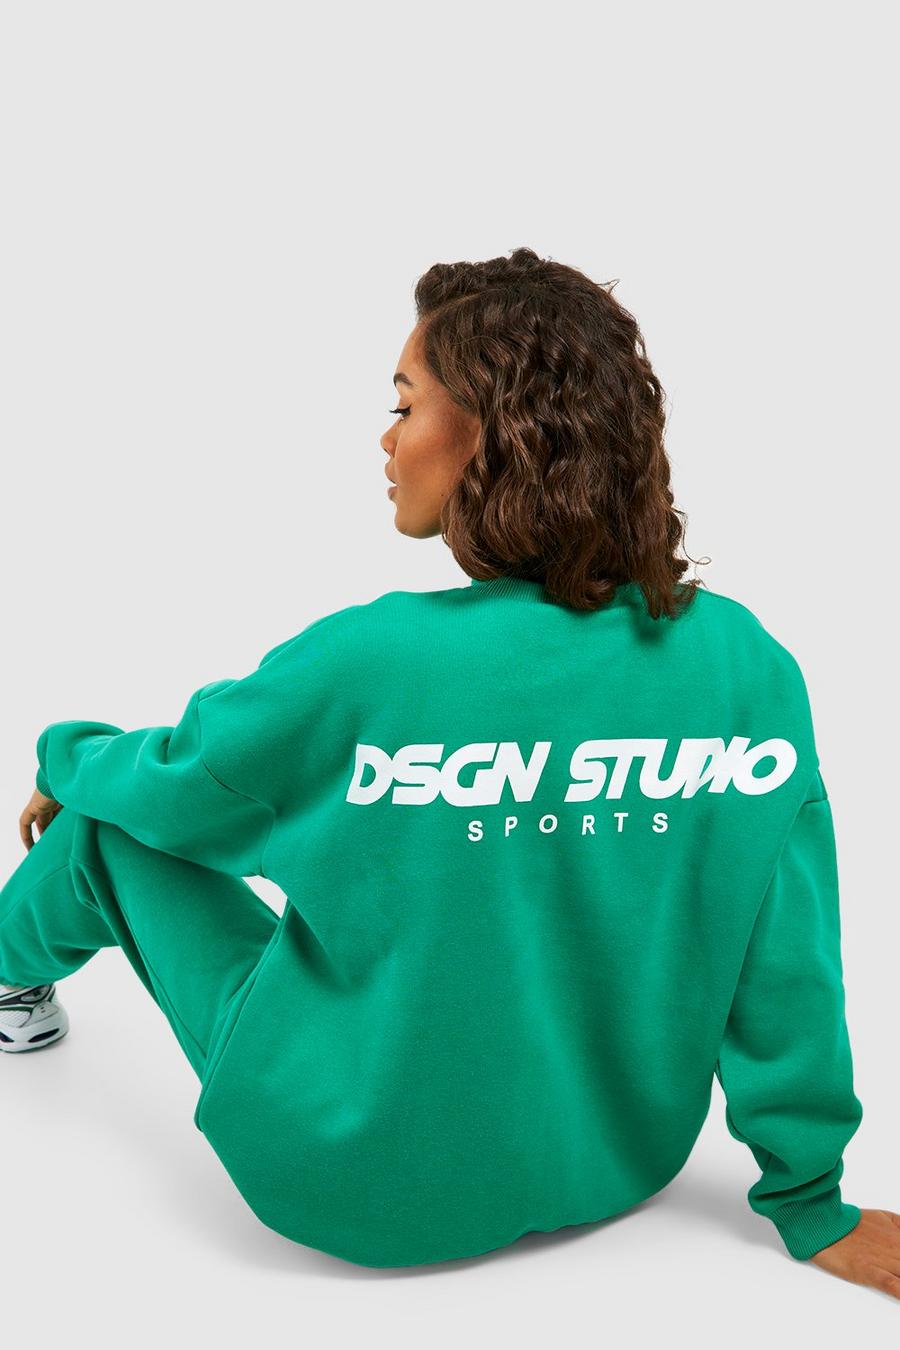 Green Dsgn Studio Sports Oversized Sweatshirt image number 1